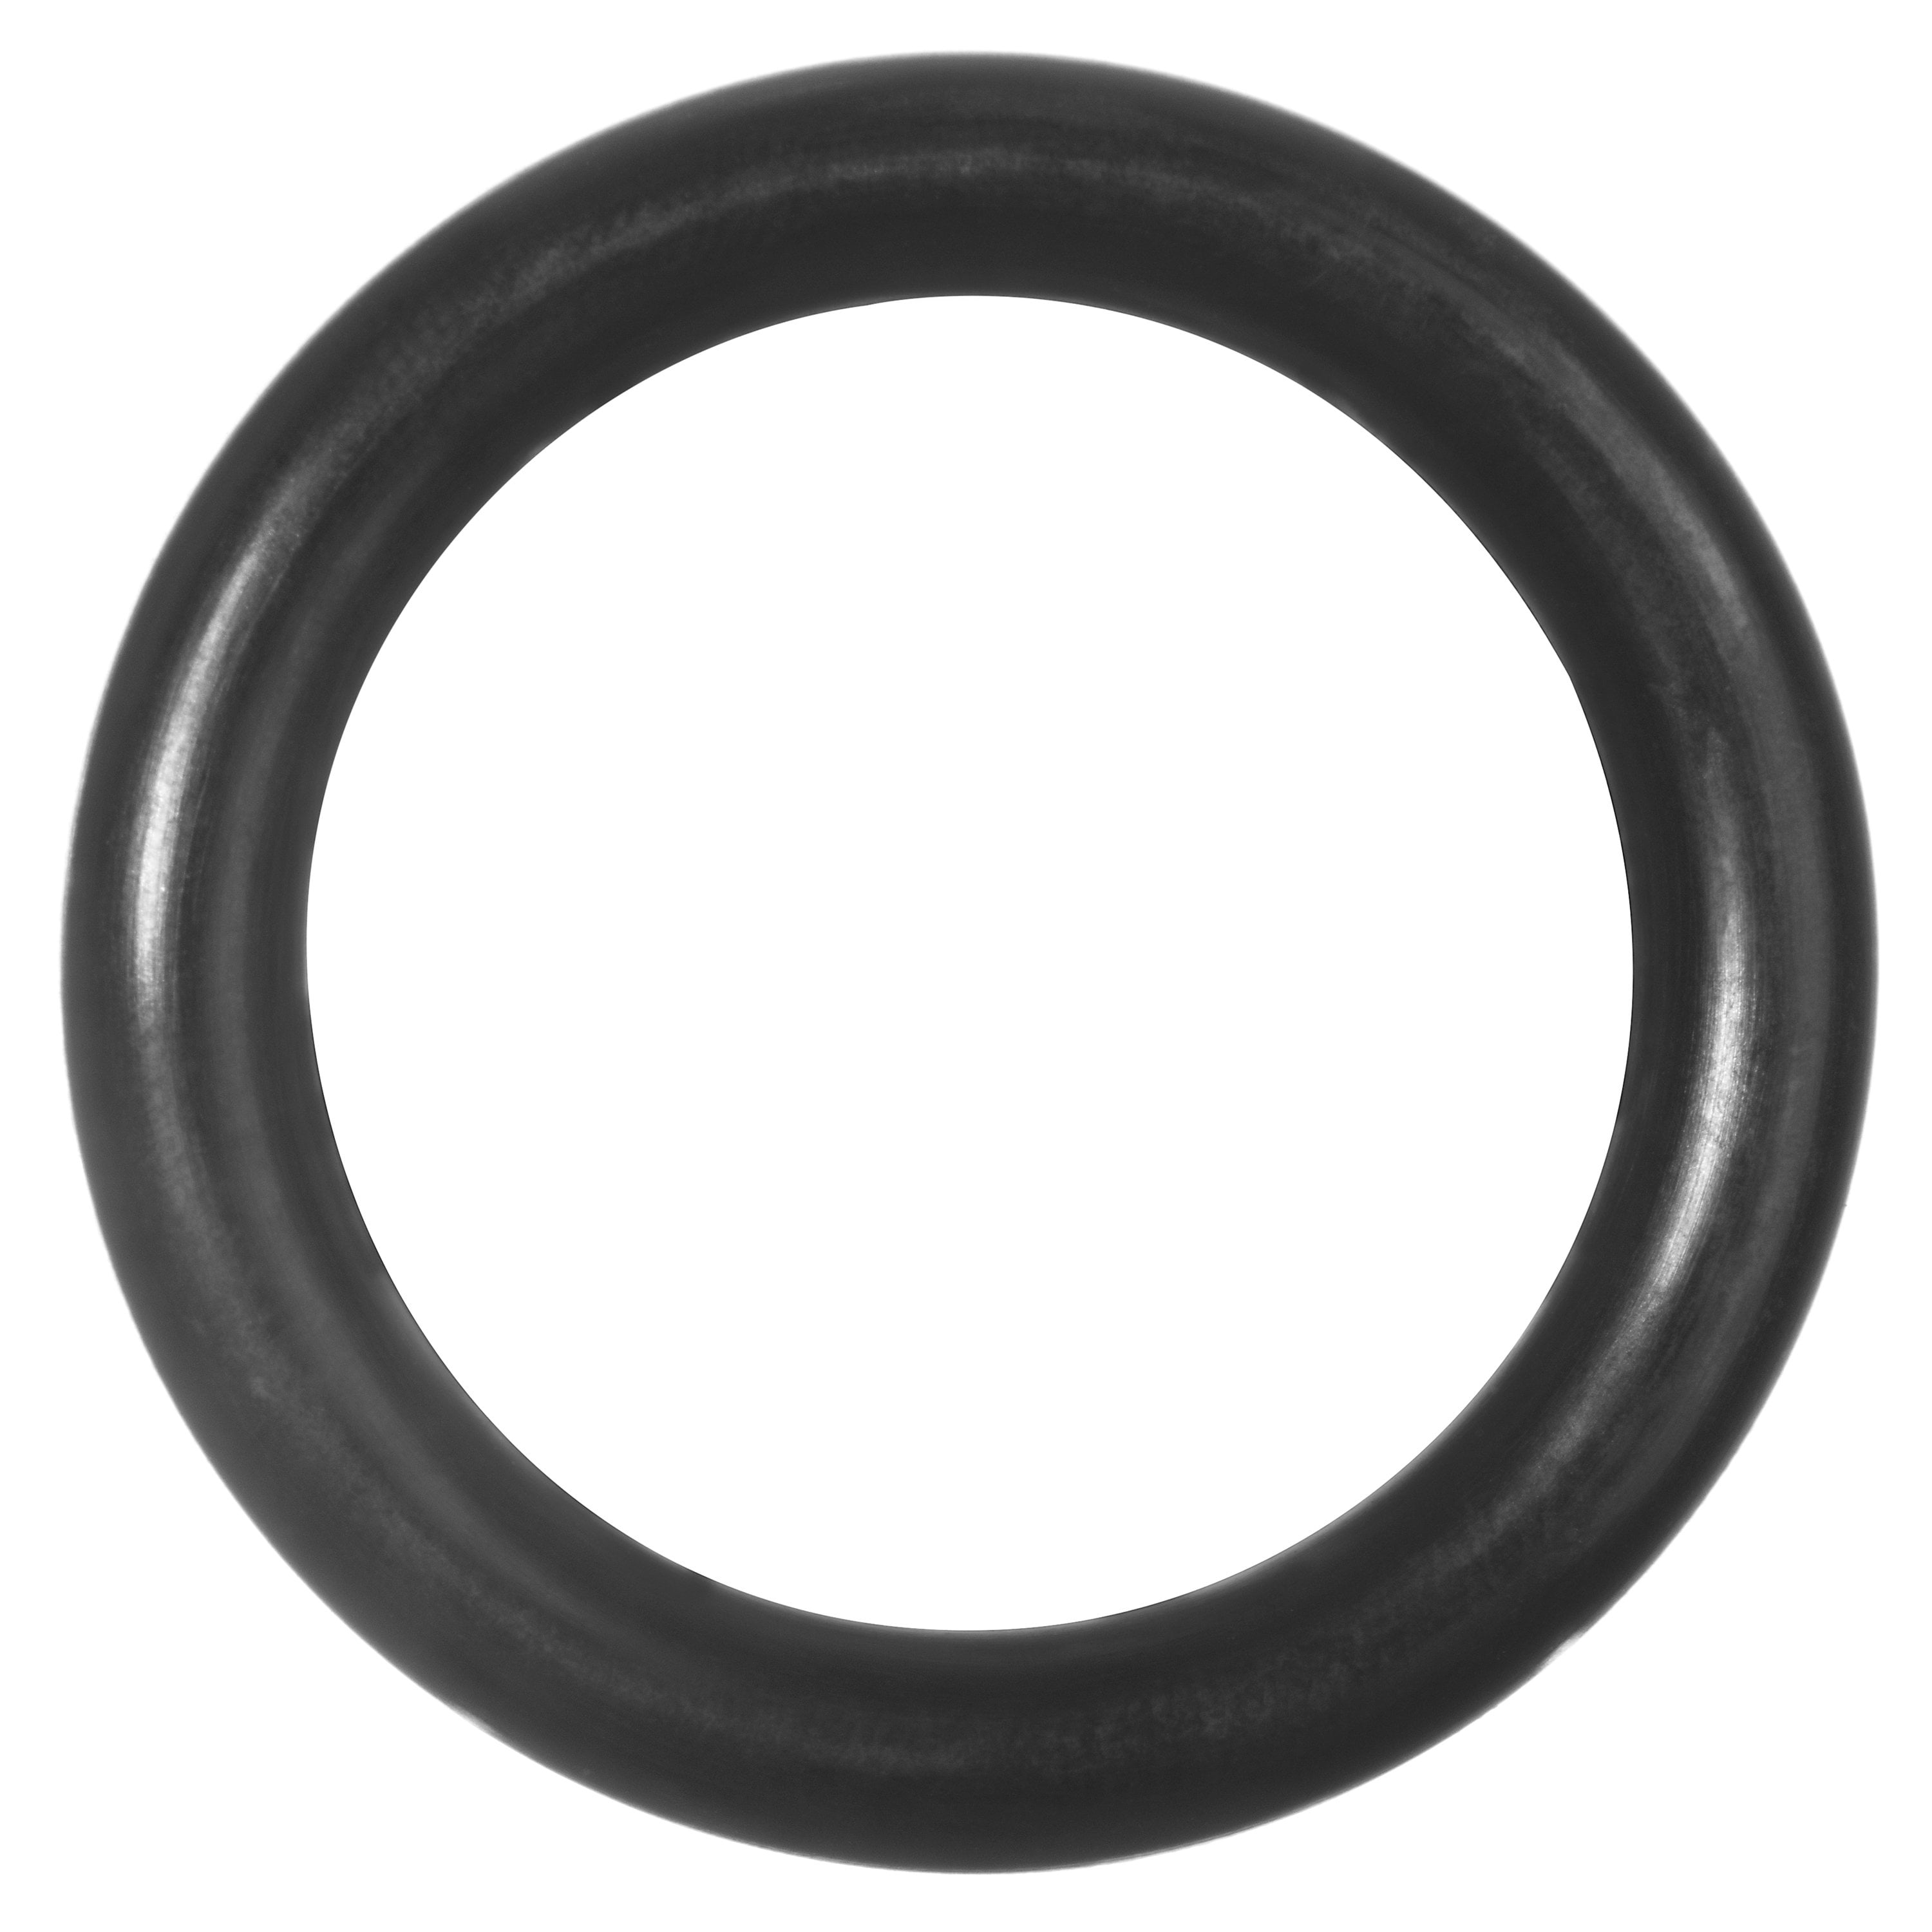 Oil-Resistant Buna N O-Rings 100 EA per Pack 7/8'' Diameter -020 